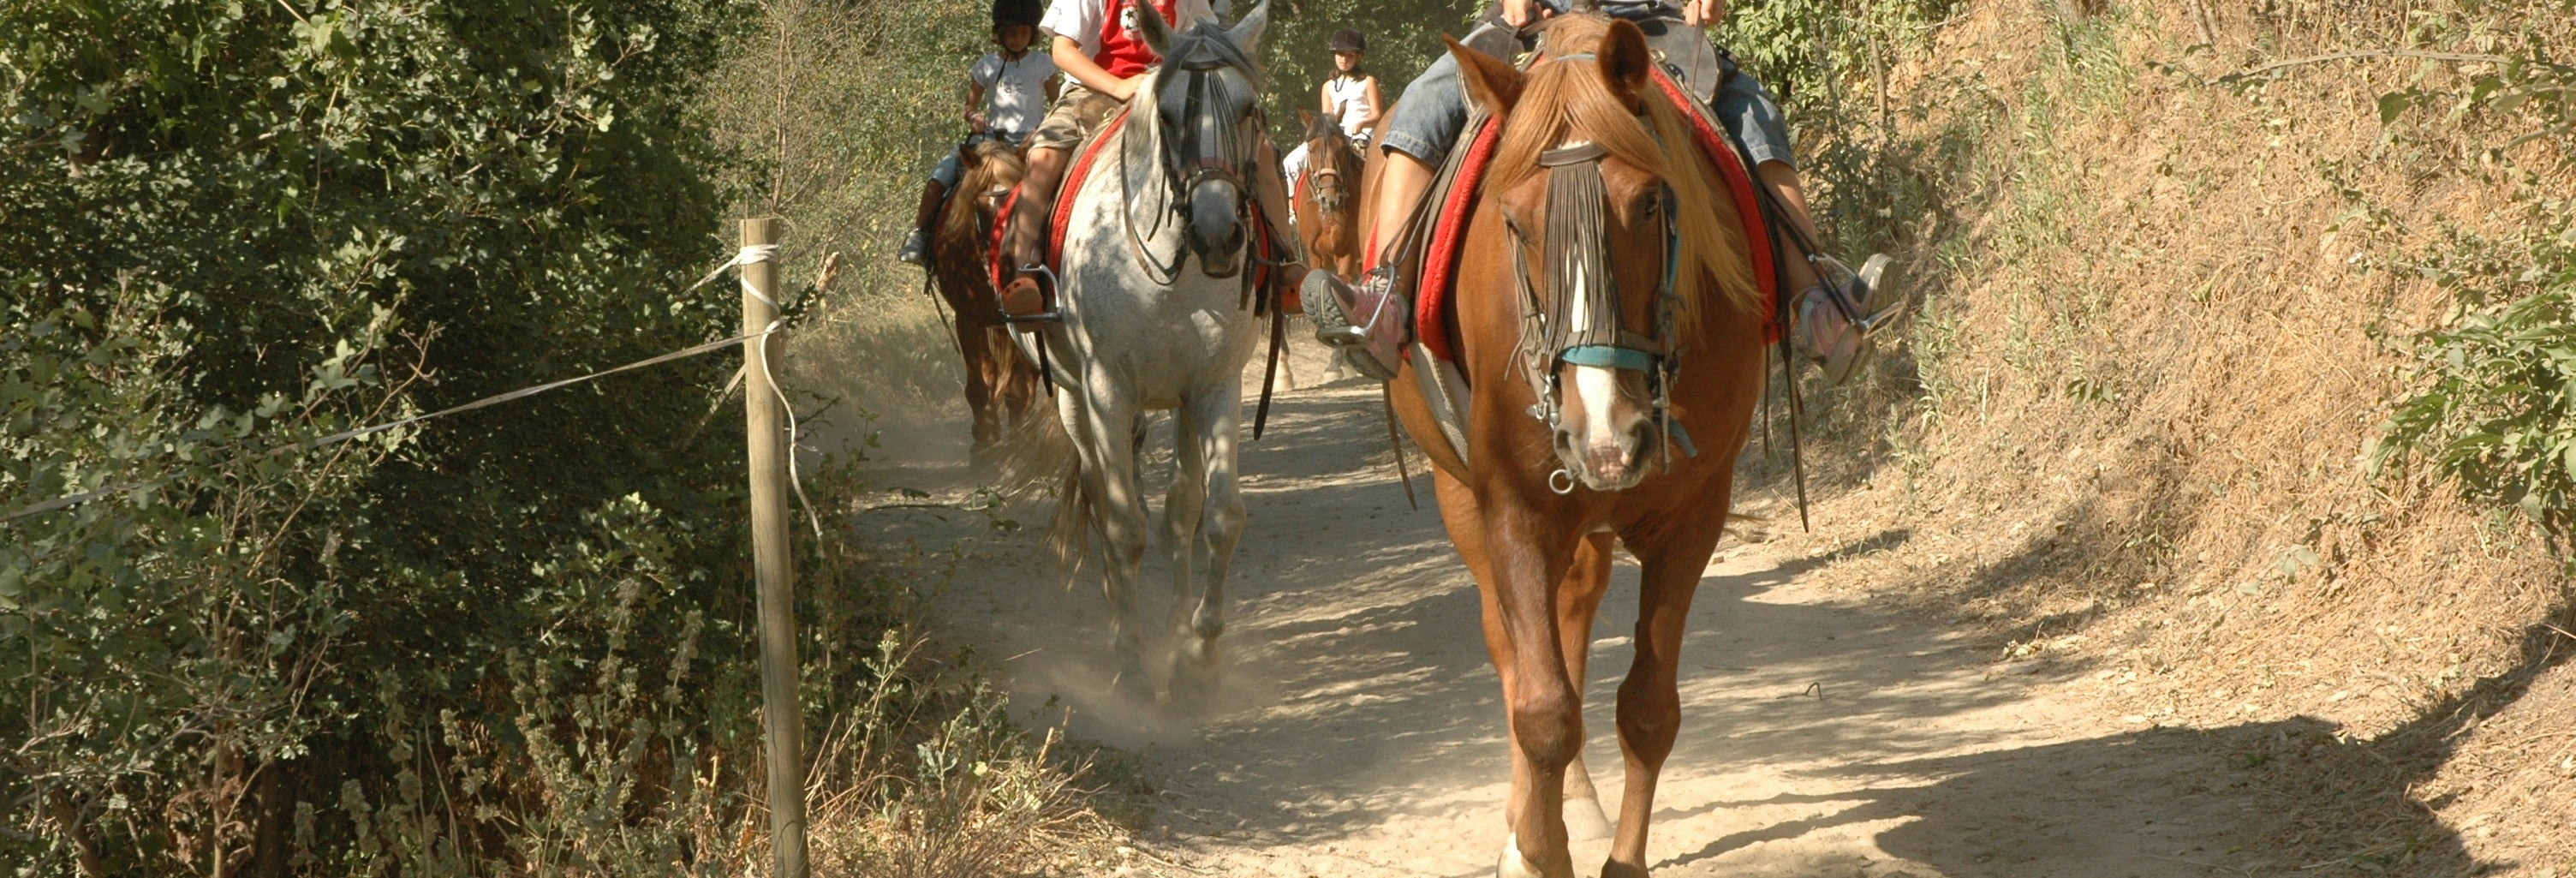 Excursión a caballo por los alrededores de Llavorsí desde Lleida